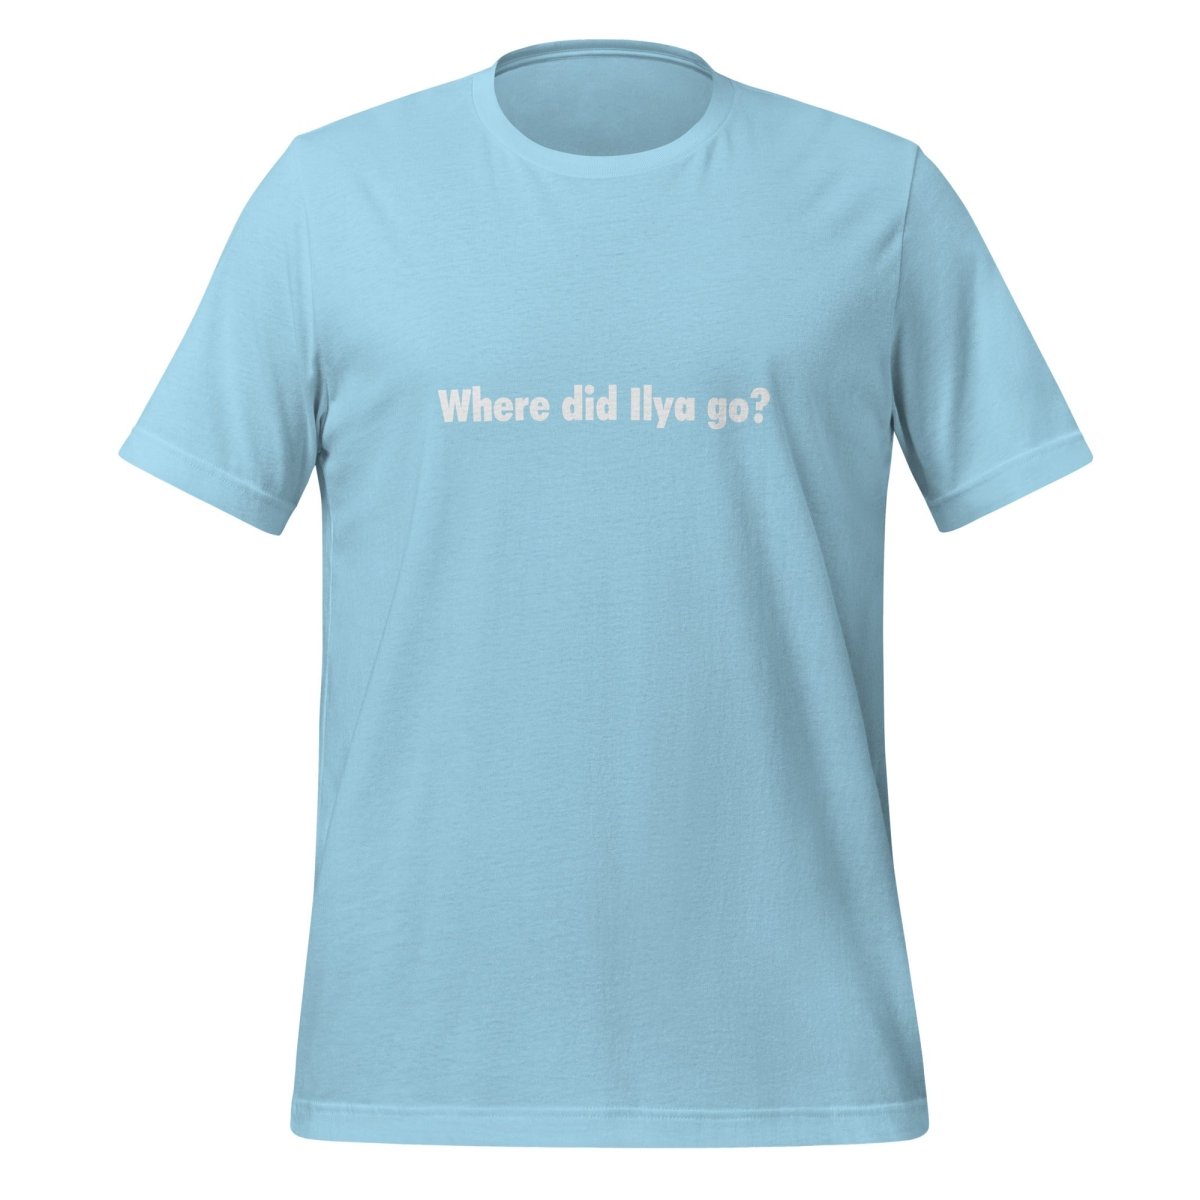 Where did Ilya go? T - Shirt (unisex) - Ocean Blue - AI Store